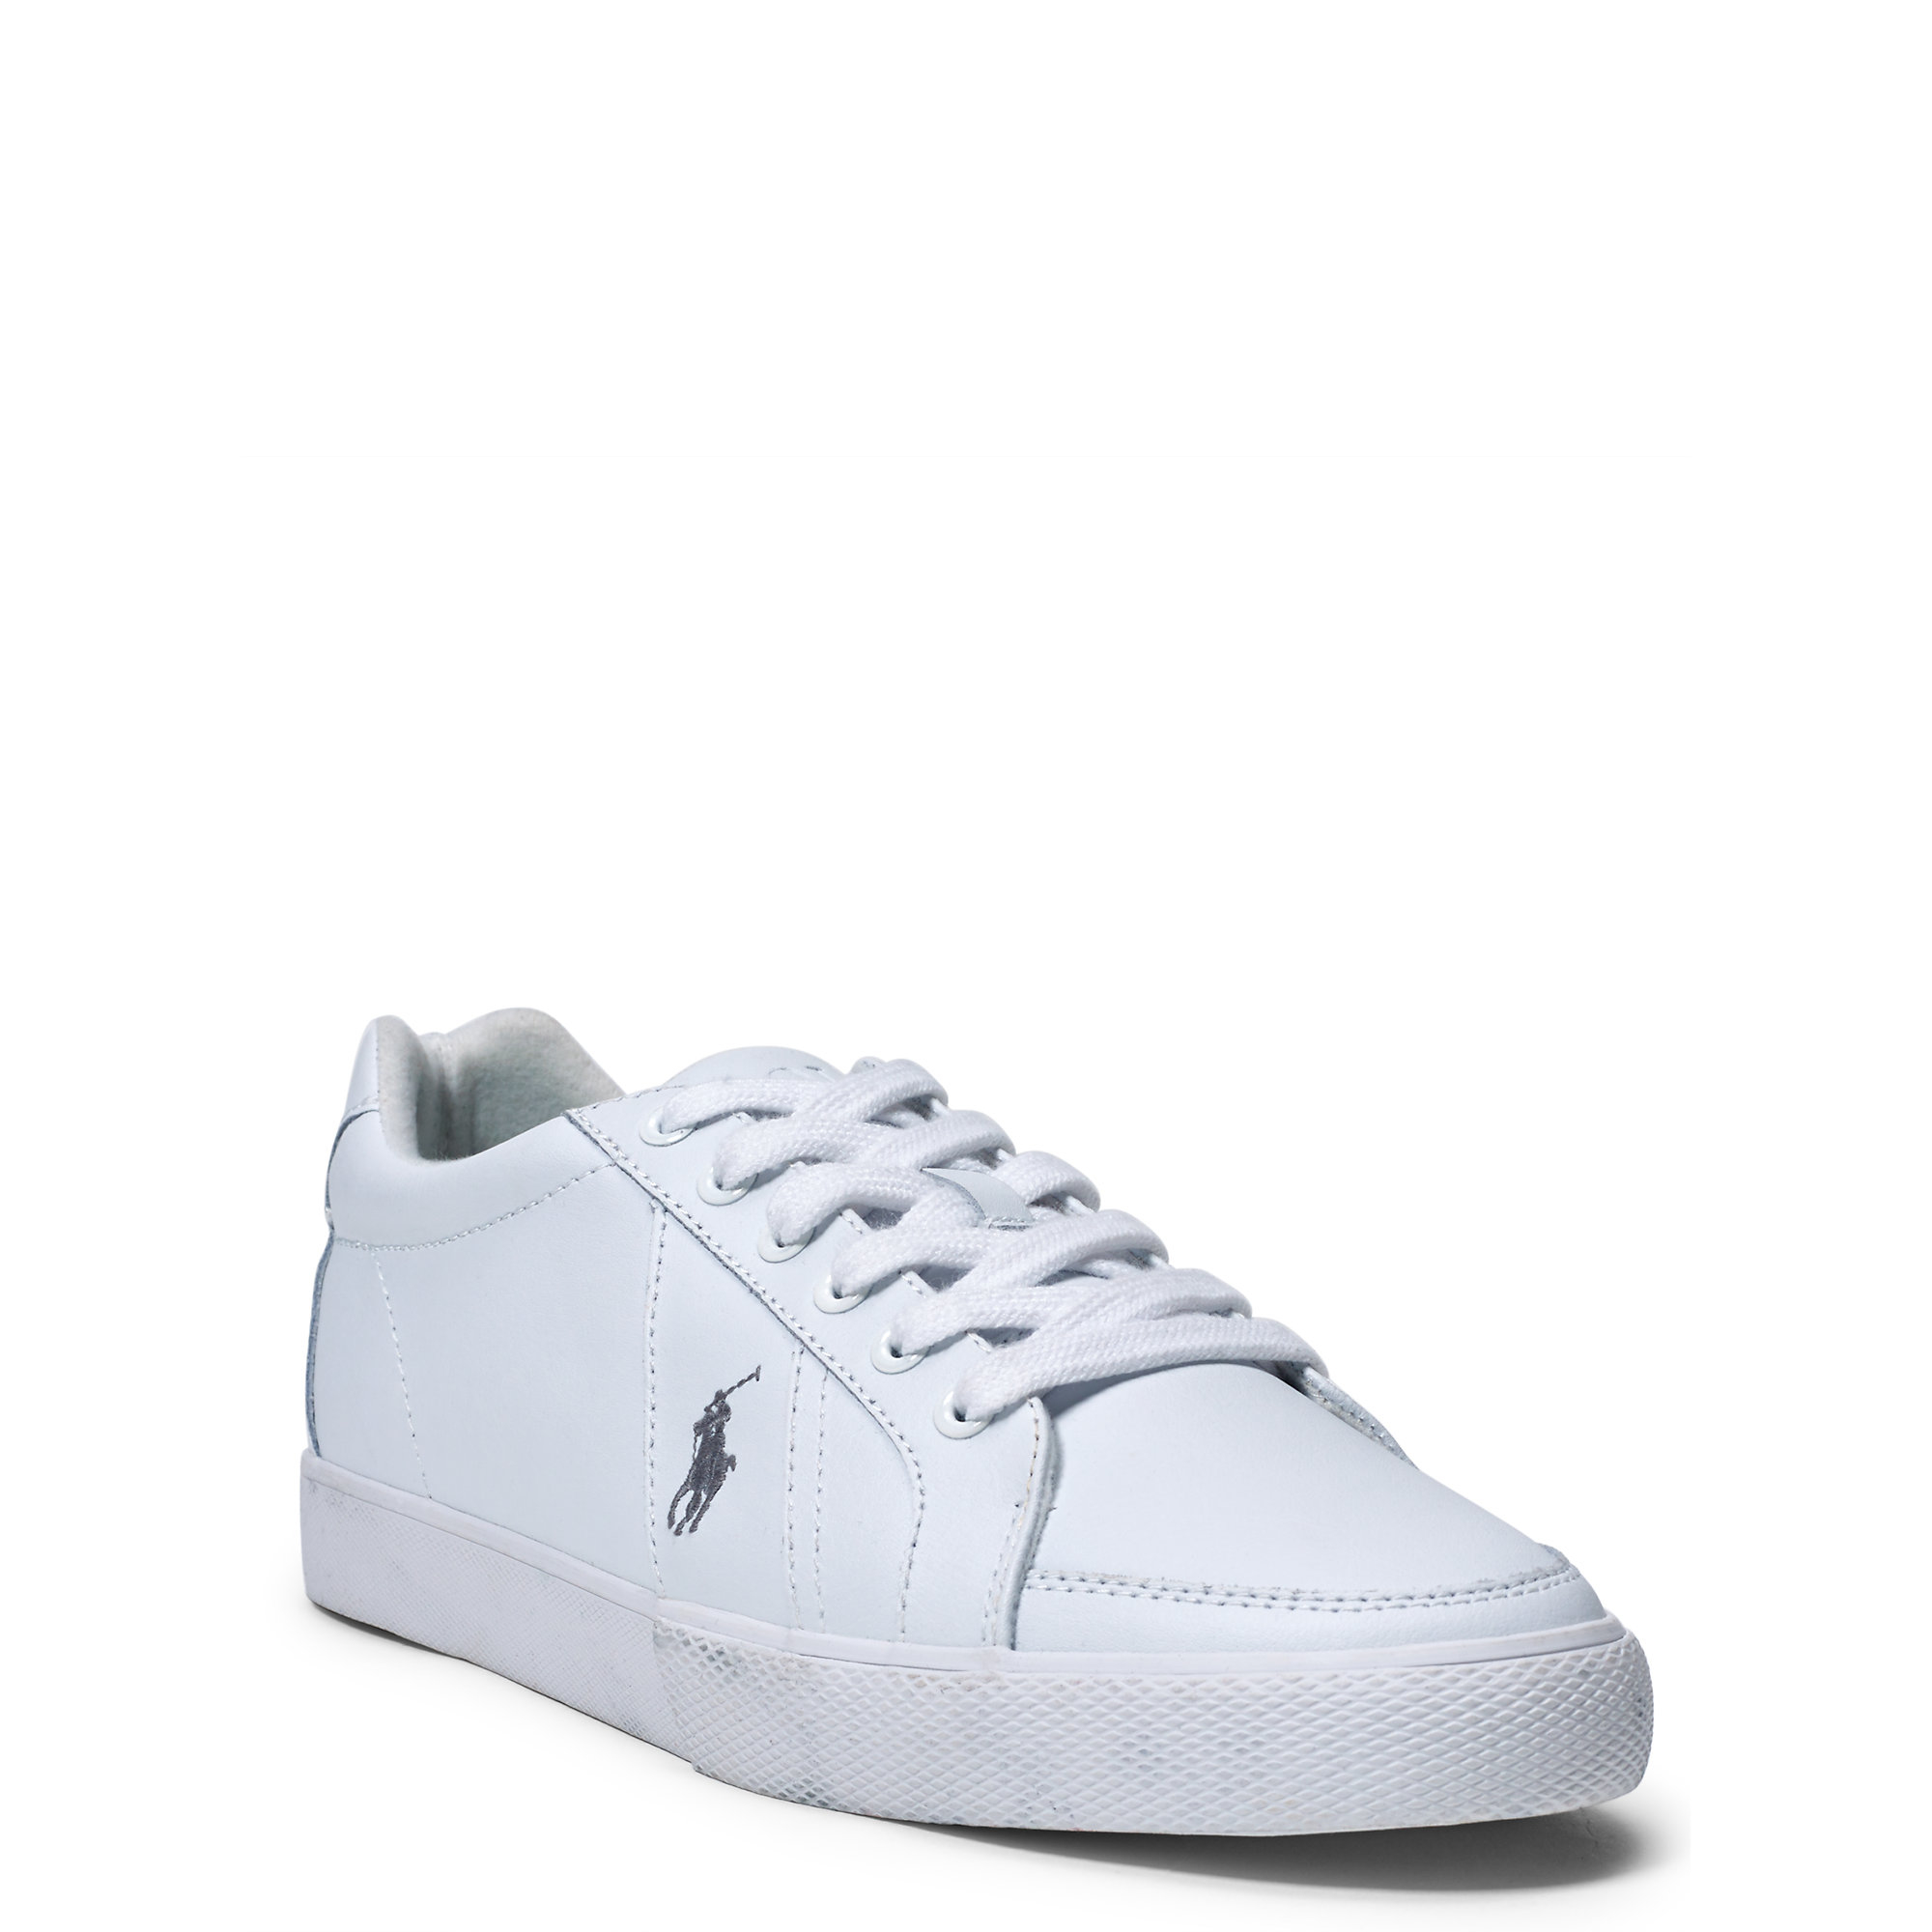 Polo Ralph Lauren Hugh Leather Sneaker in White for Men - Lyst